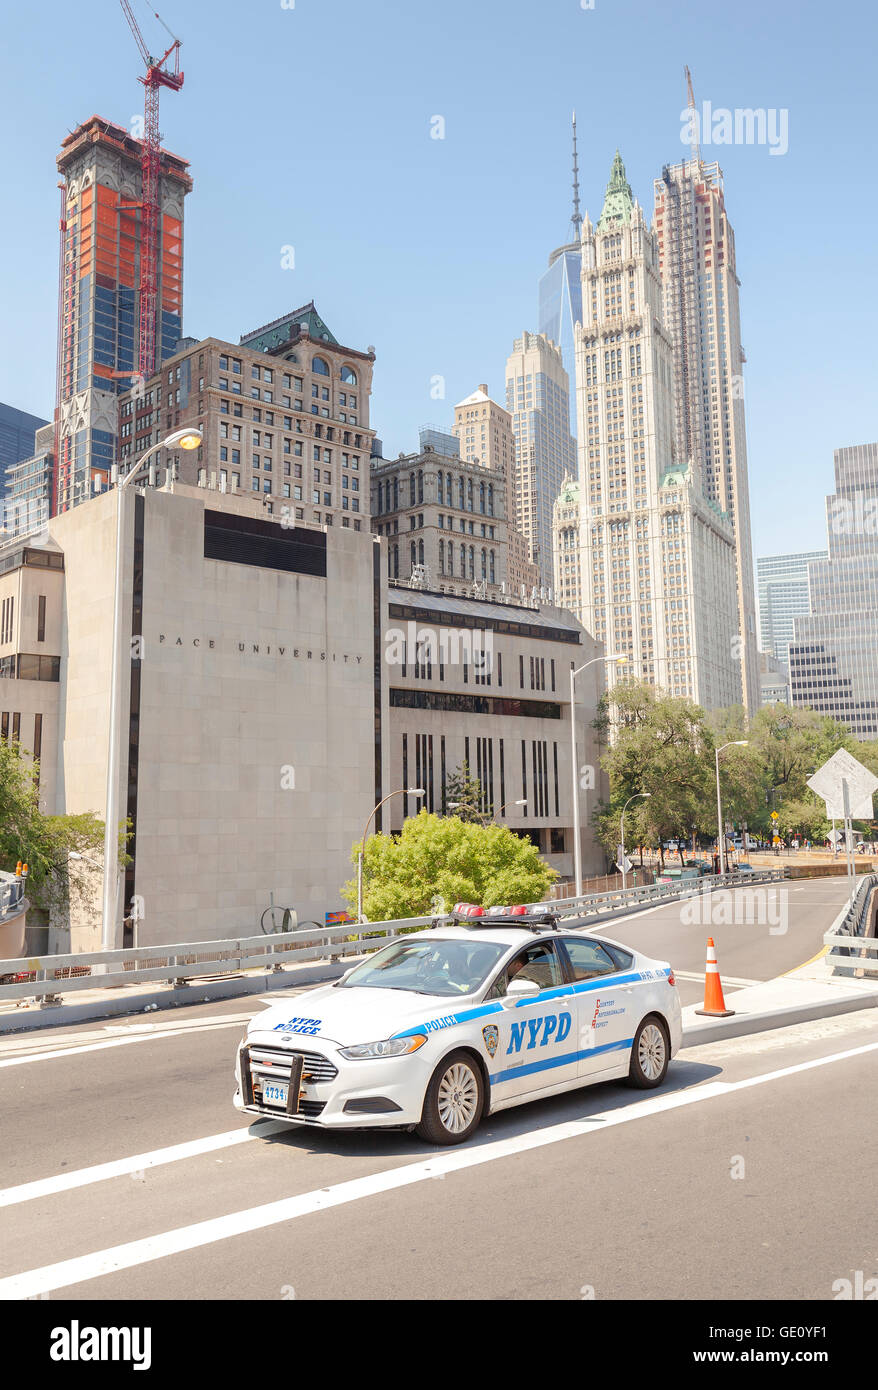 NYPD voiture garée dans une rue avec des bâtiments de Manhattan à distance. Banque D'Images